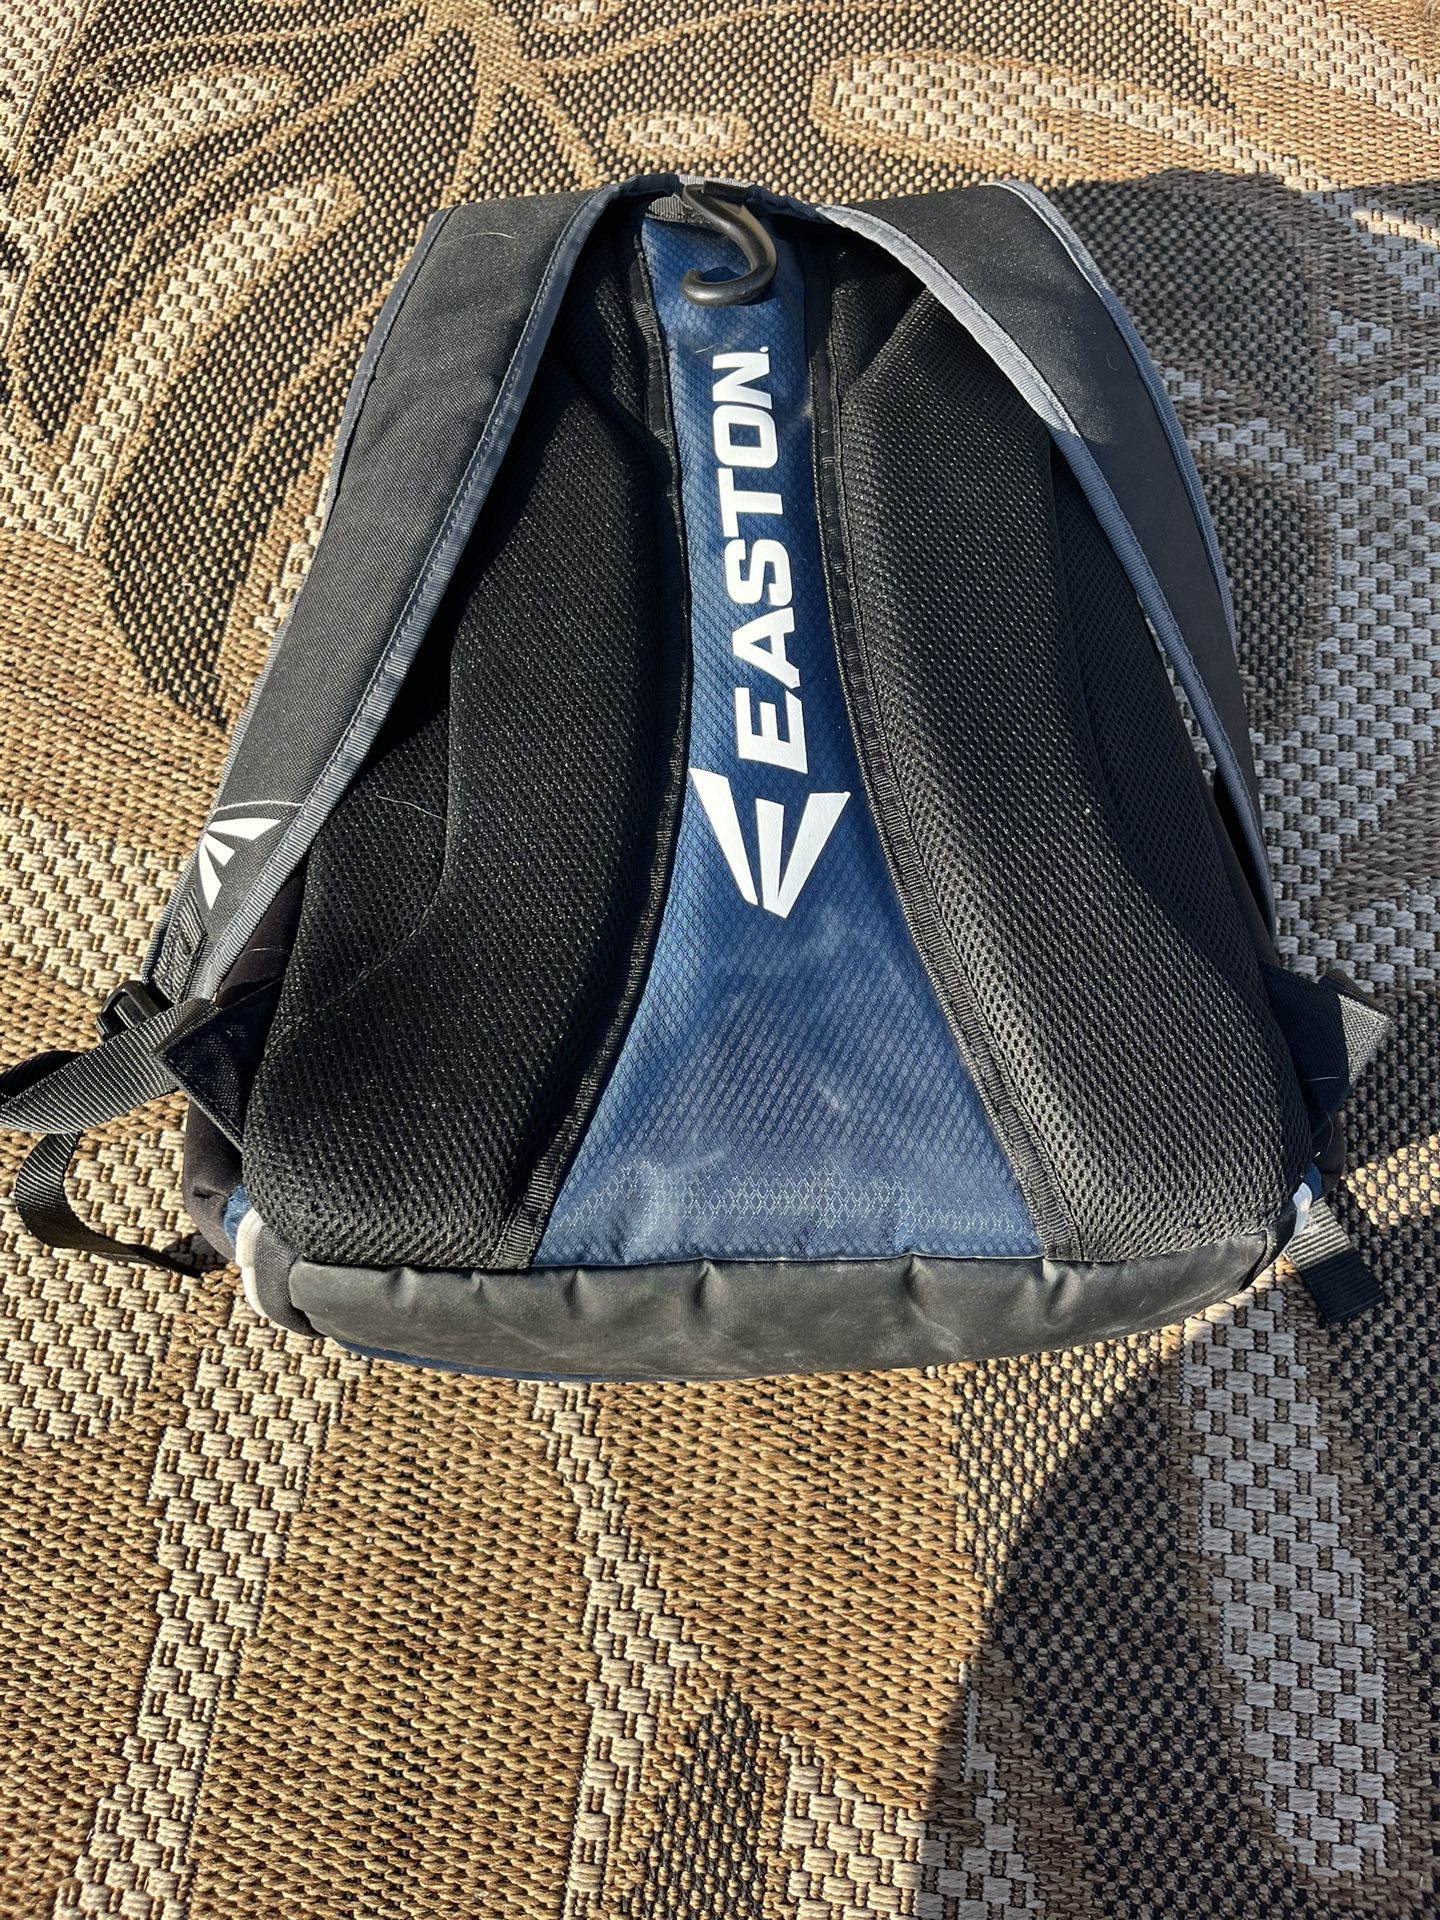 Easton Baseball / Softball Glove & Bat, Navy Blue Sport Backpack